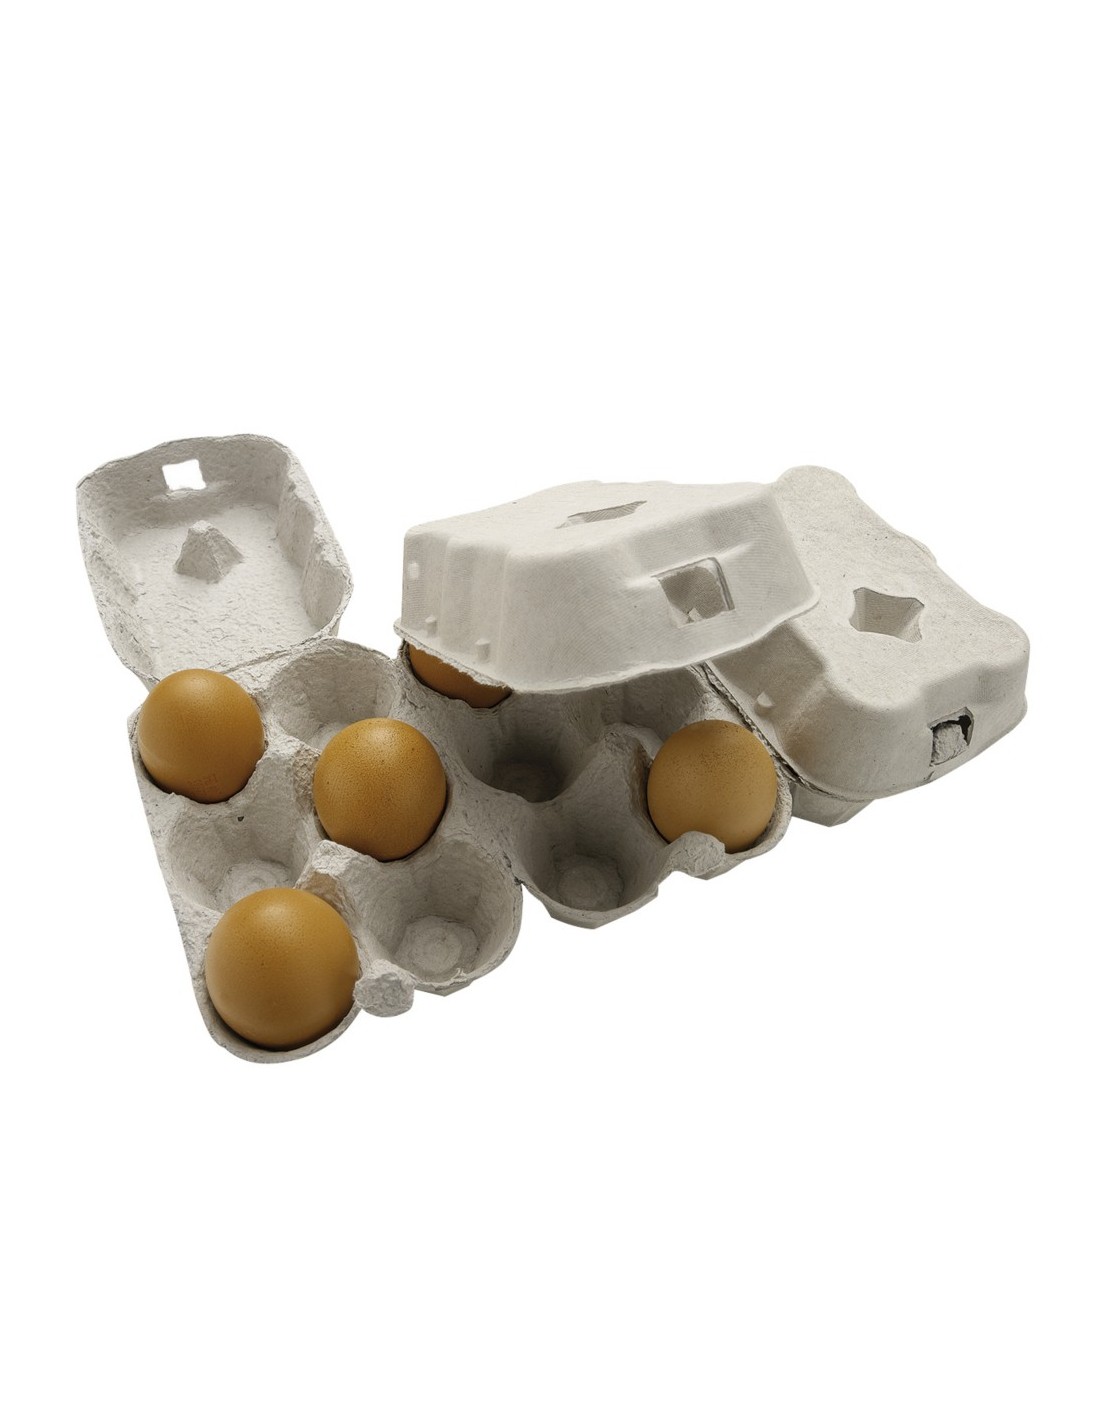 Boites 6 œufs vides en carton pas cher